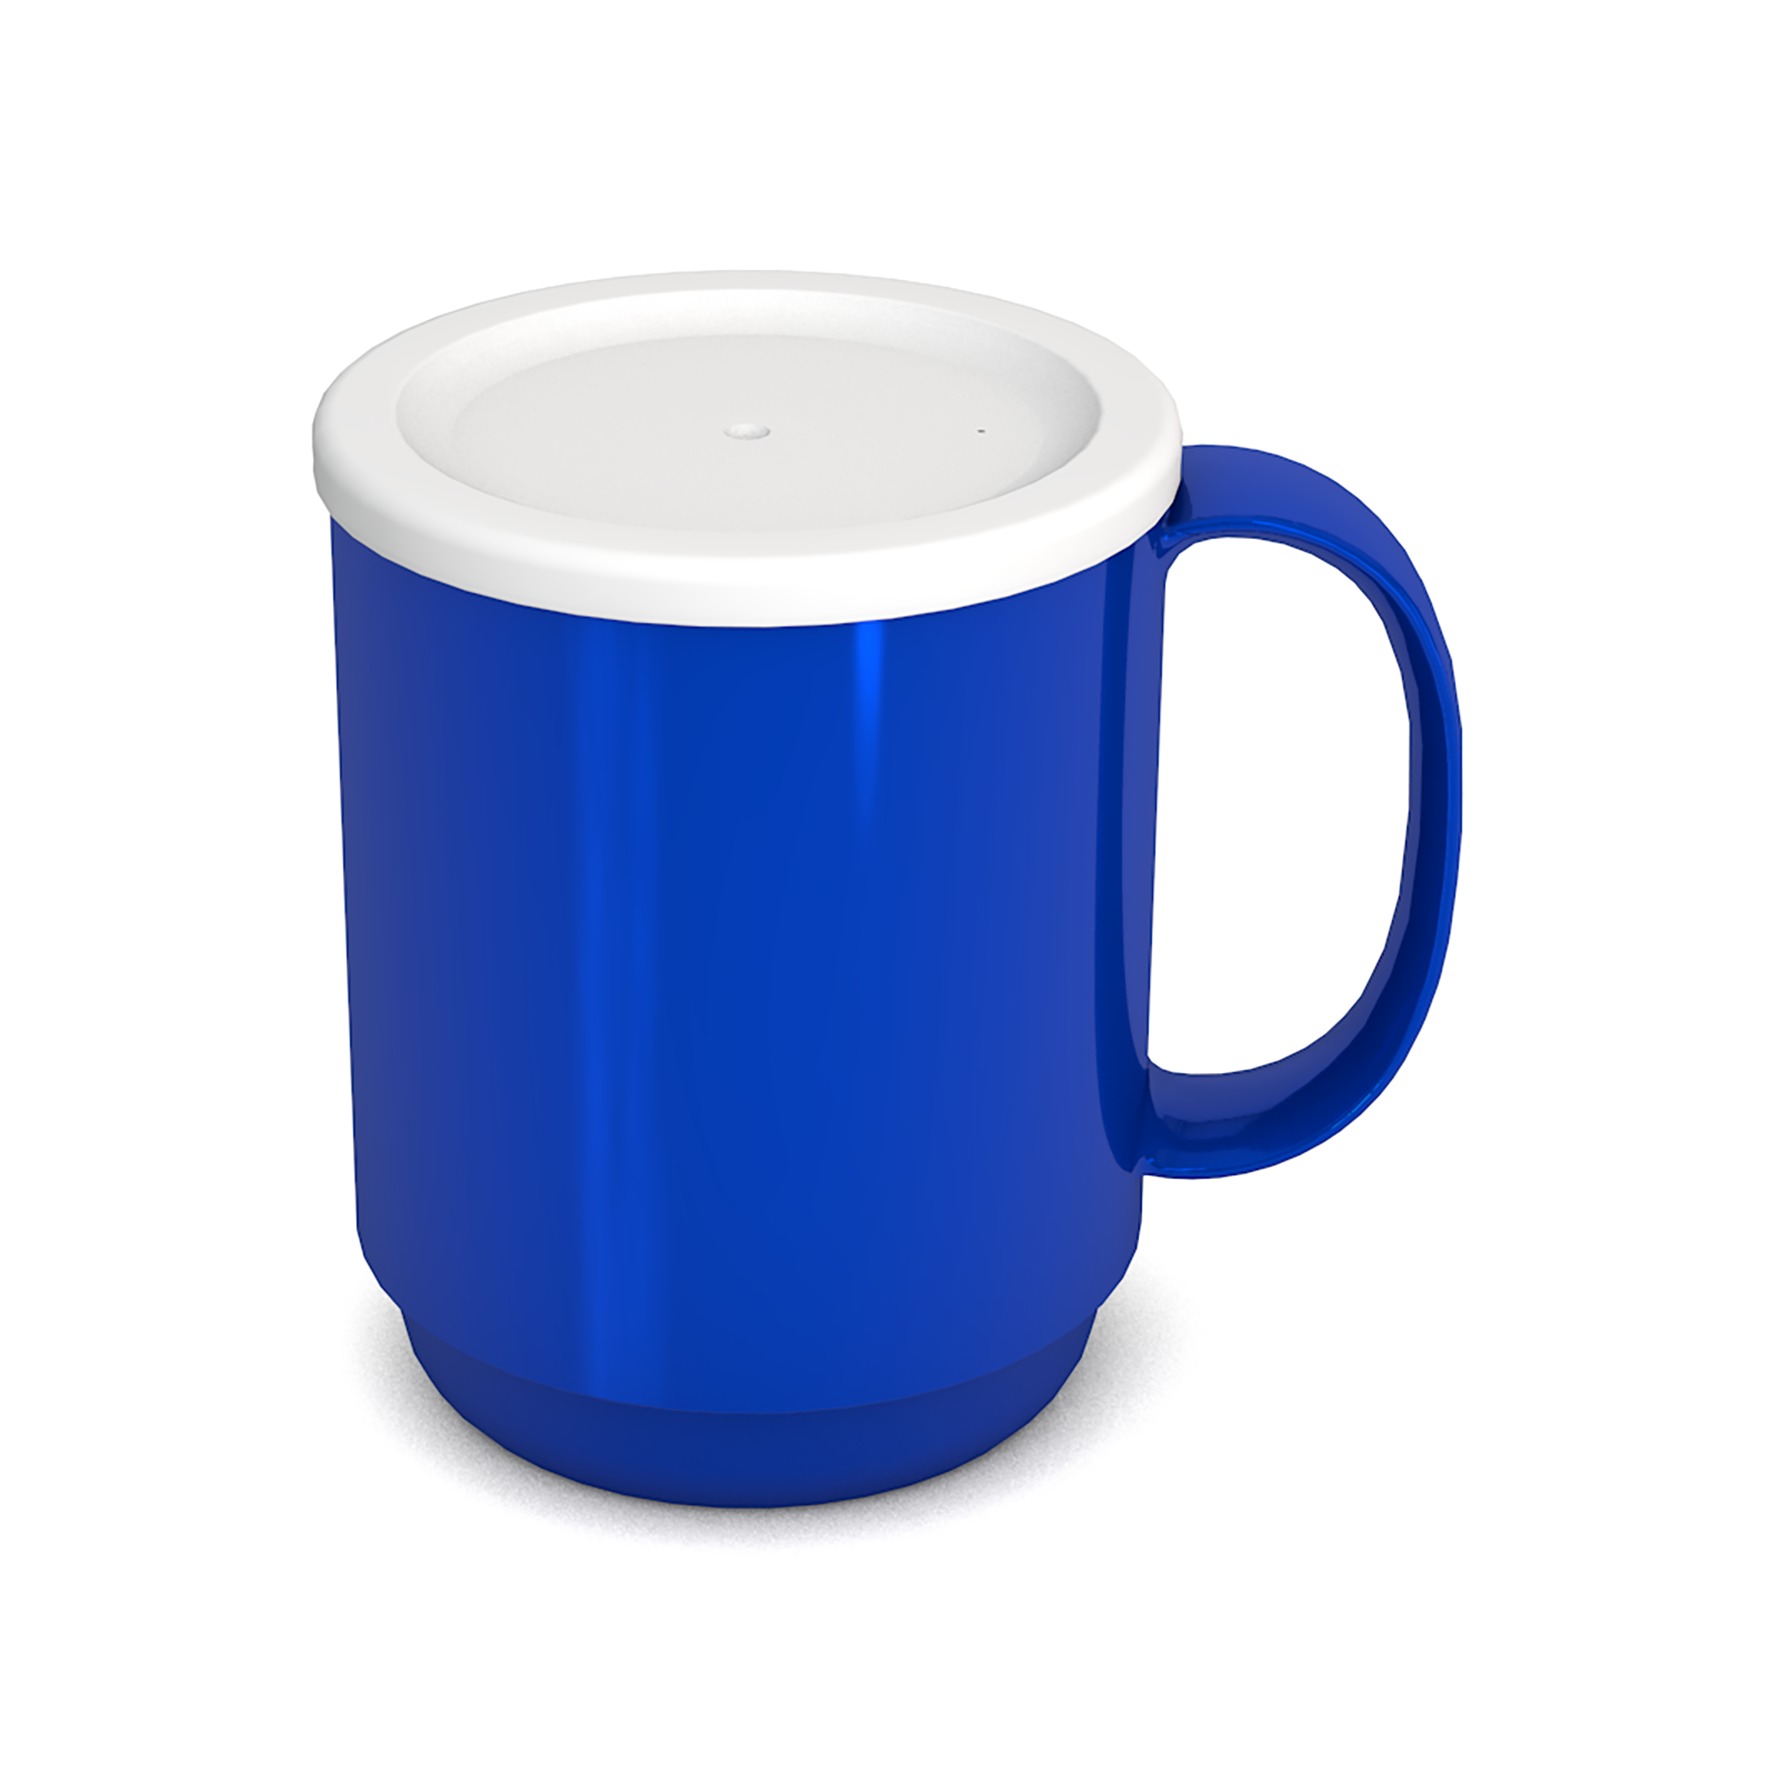 Large Mug with lid